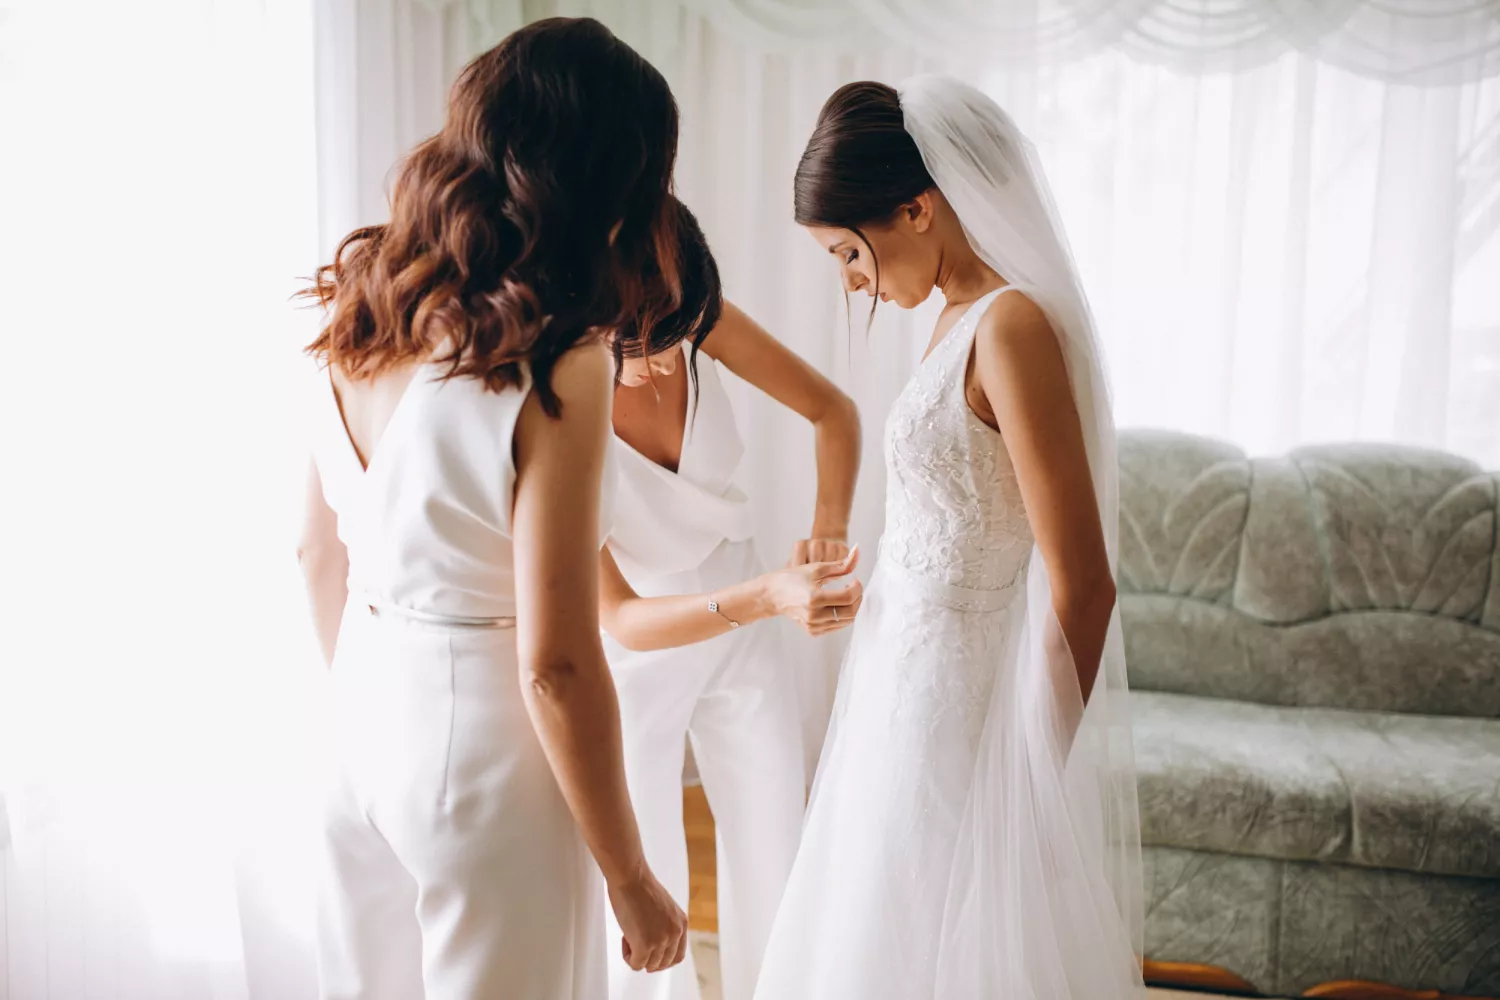 婚禮顧問可以幫助容易焦慮的新人分擔籌辦婚禮的壓力。